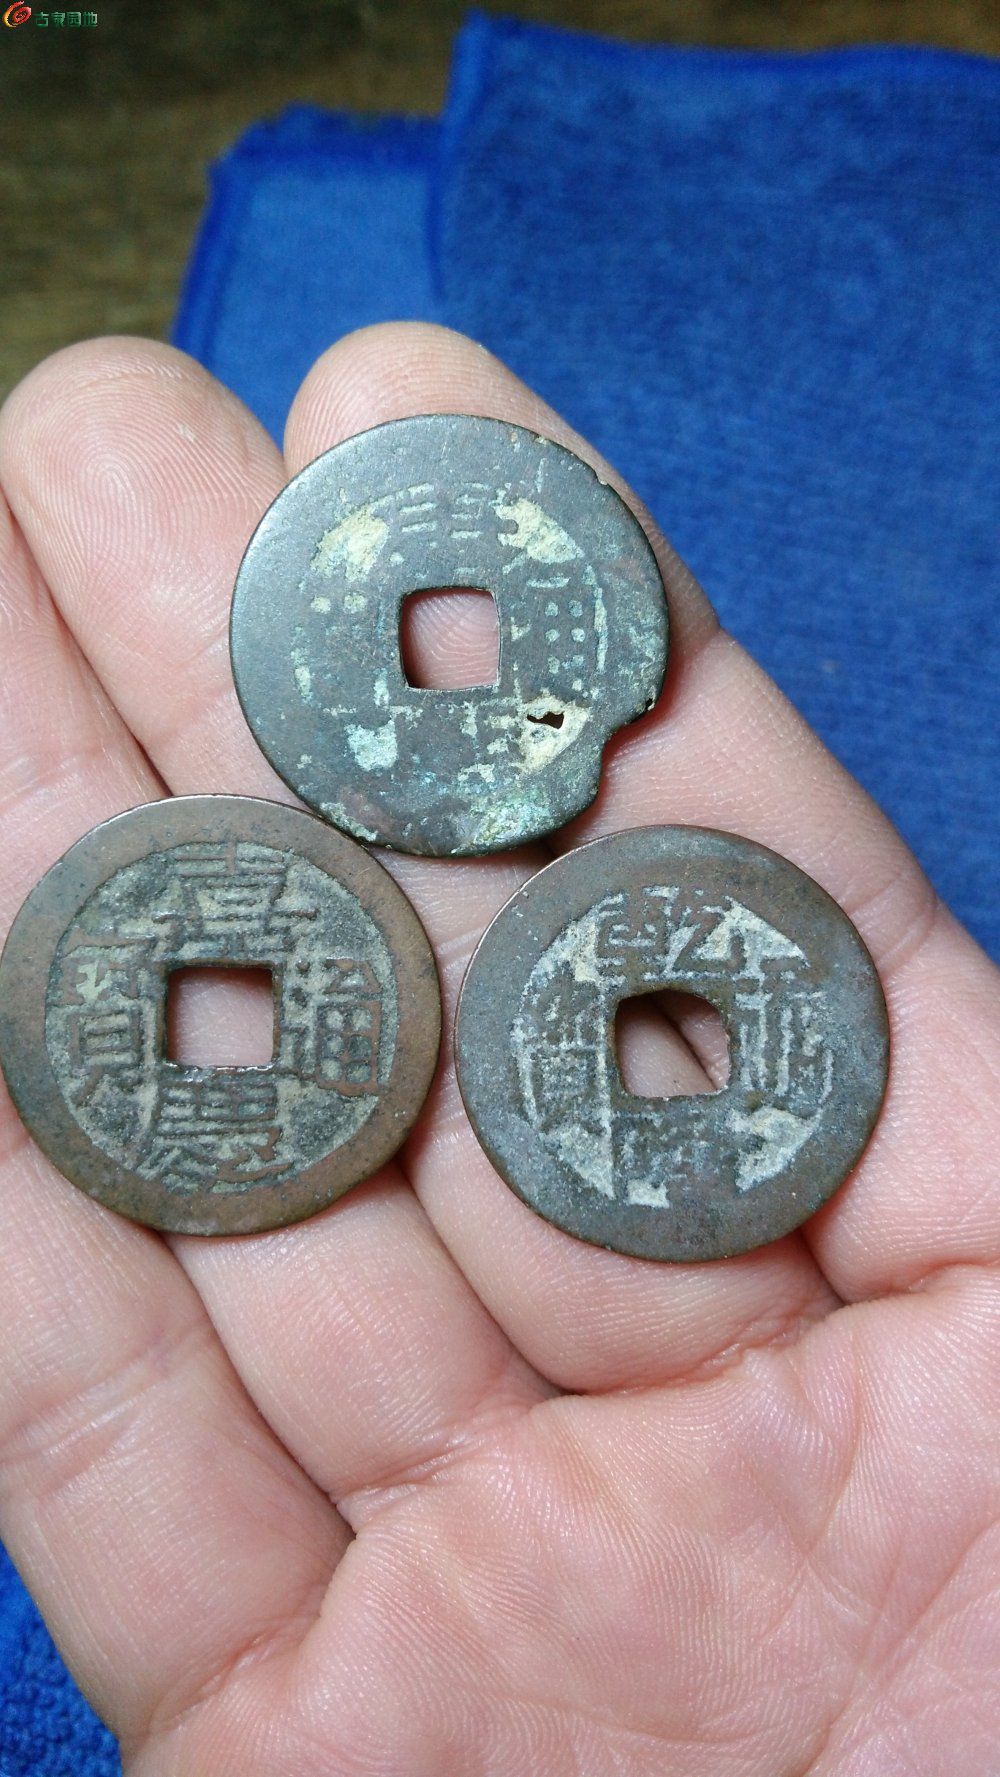 [欣赏] 古玩城的刘总送我三个烂铜钱